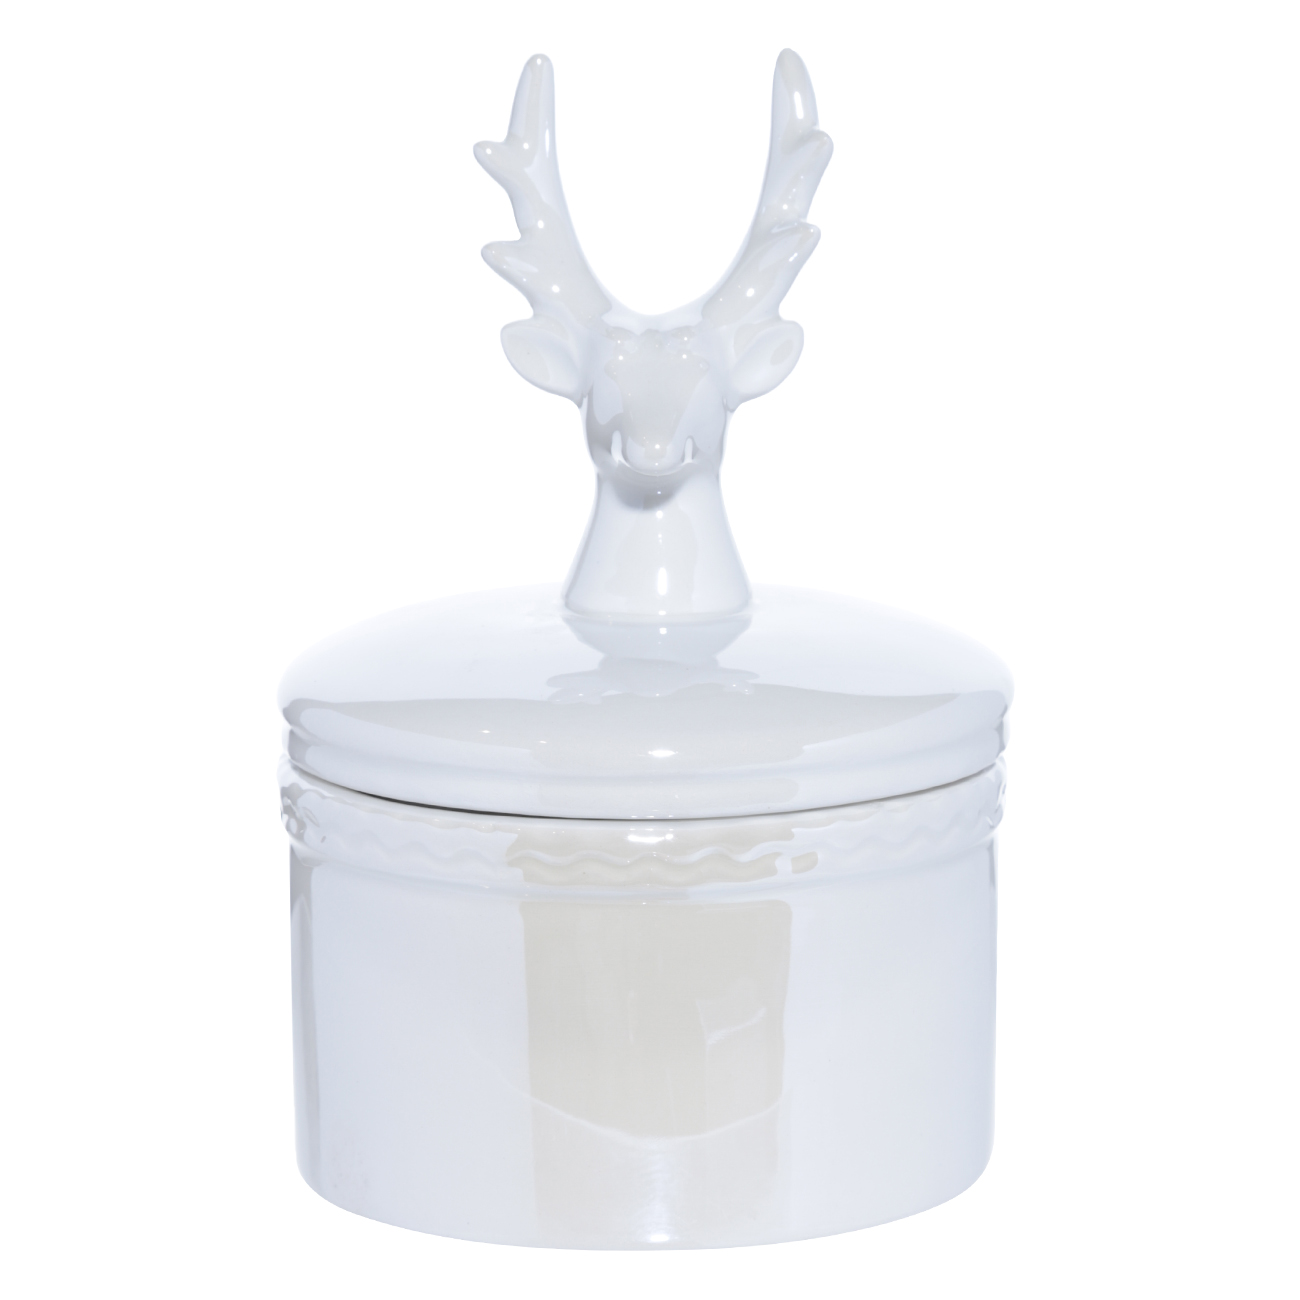 Шкатулка, 12 см, керамика, белая, Олень, Winter deer